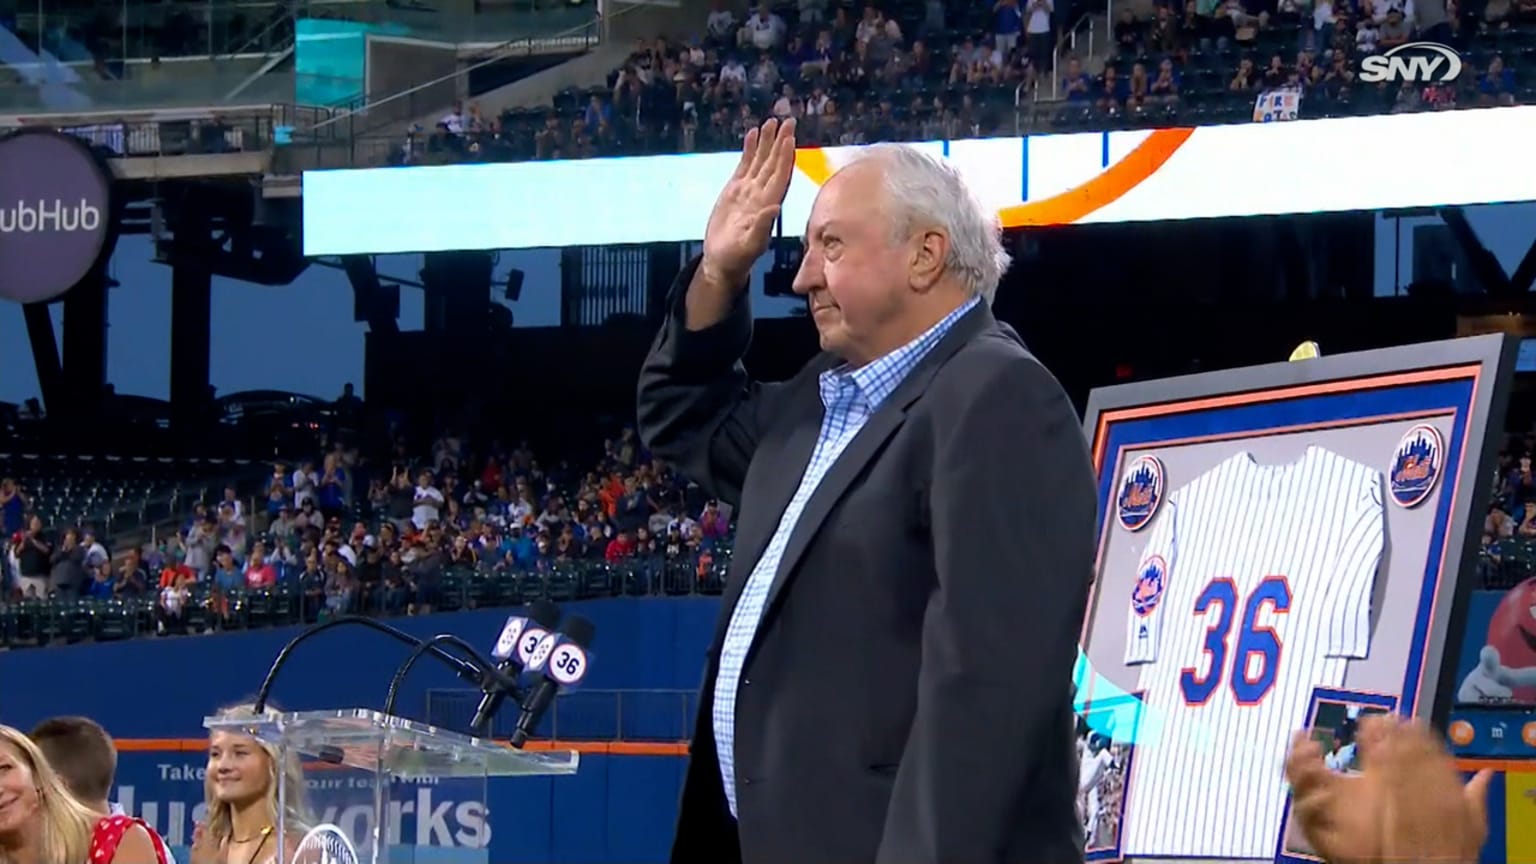 Mets honor Jerry Koosman with overdue jersey retirement